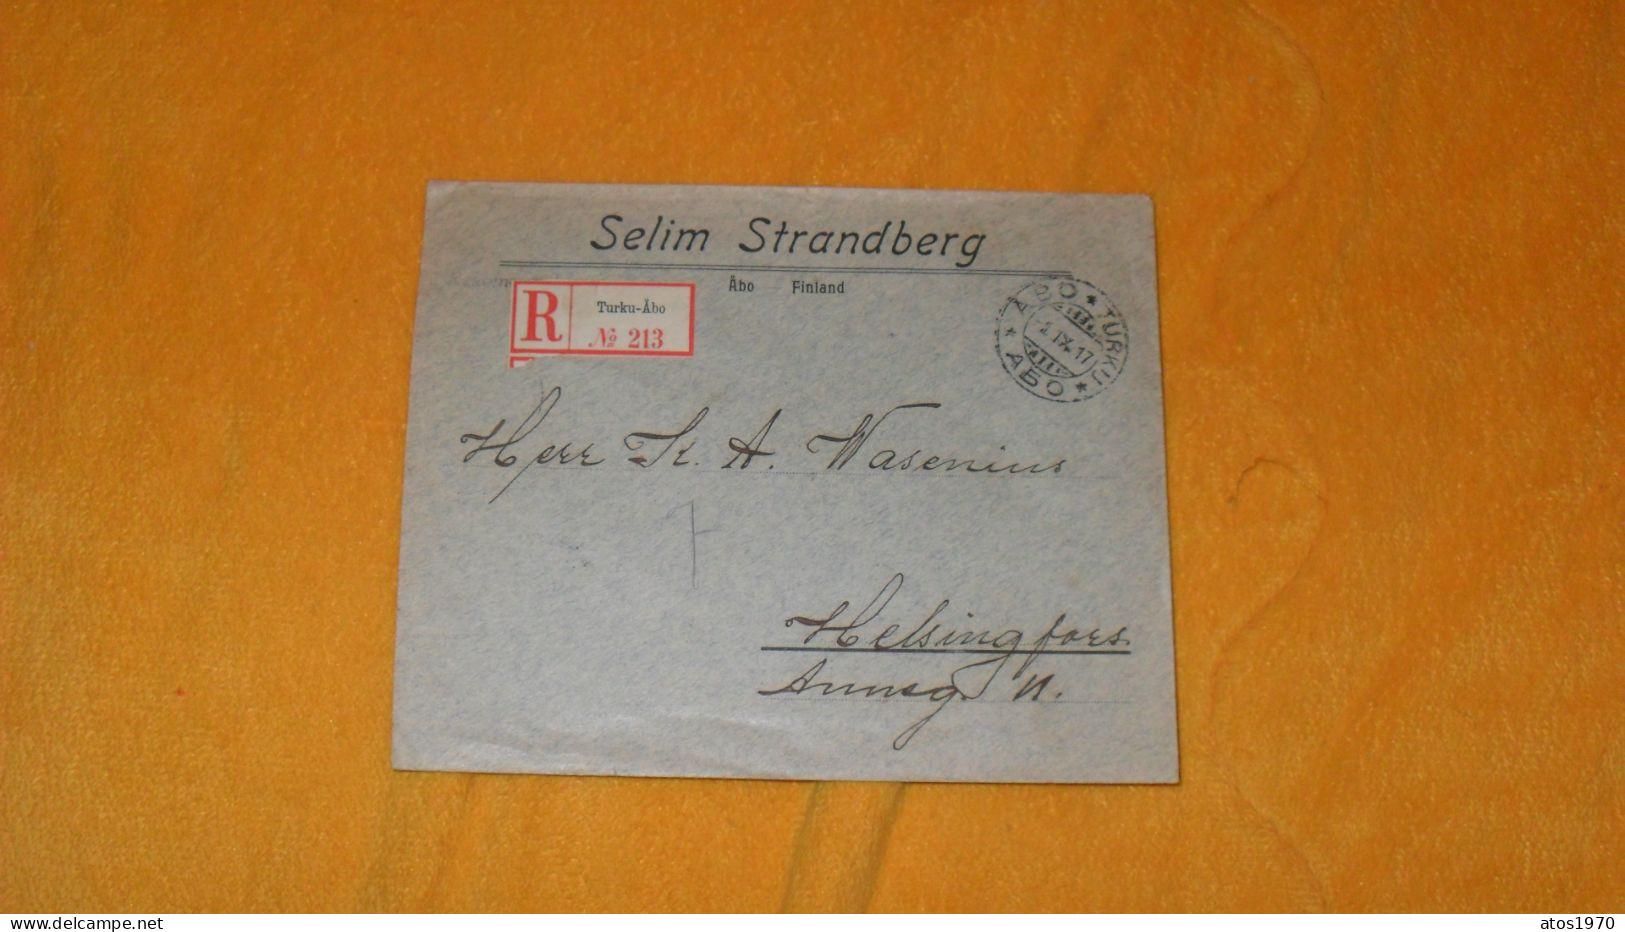 ENVELOPPE ANCIENNE DE 1917../ SELIM STRANDBERG ABO FINLAND..RECOMMANDE TURKU ABO N°213 POUR HELSINKI ?..+ TIMBRES X 25 - Storia Postale